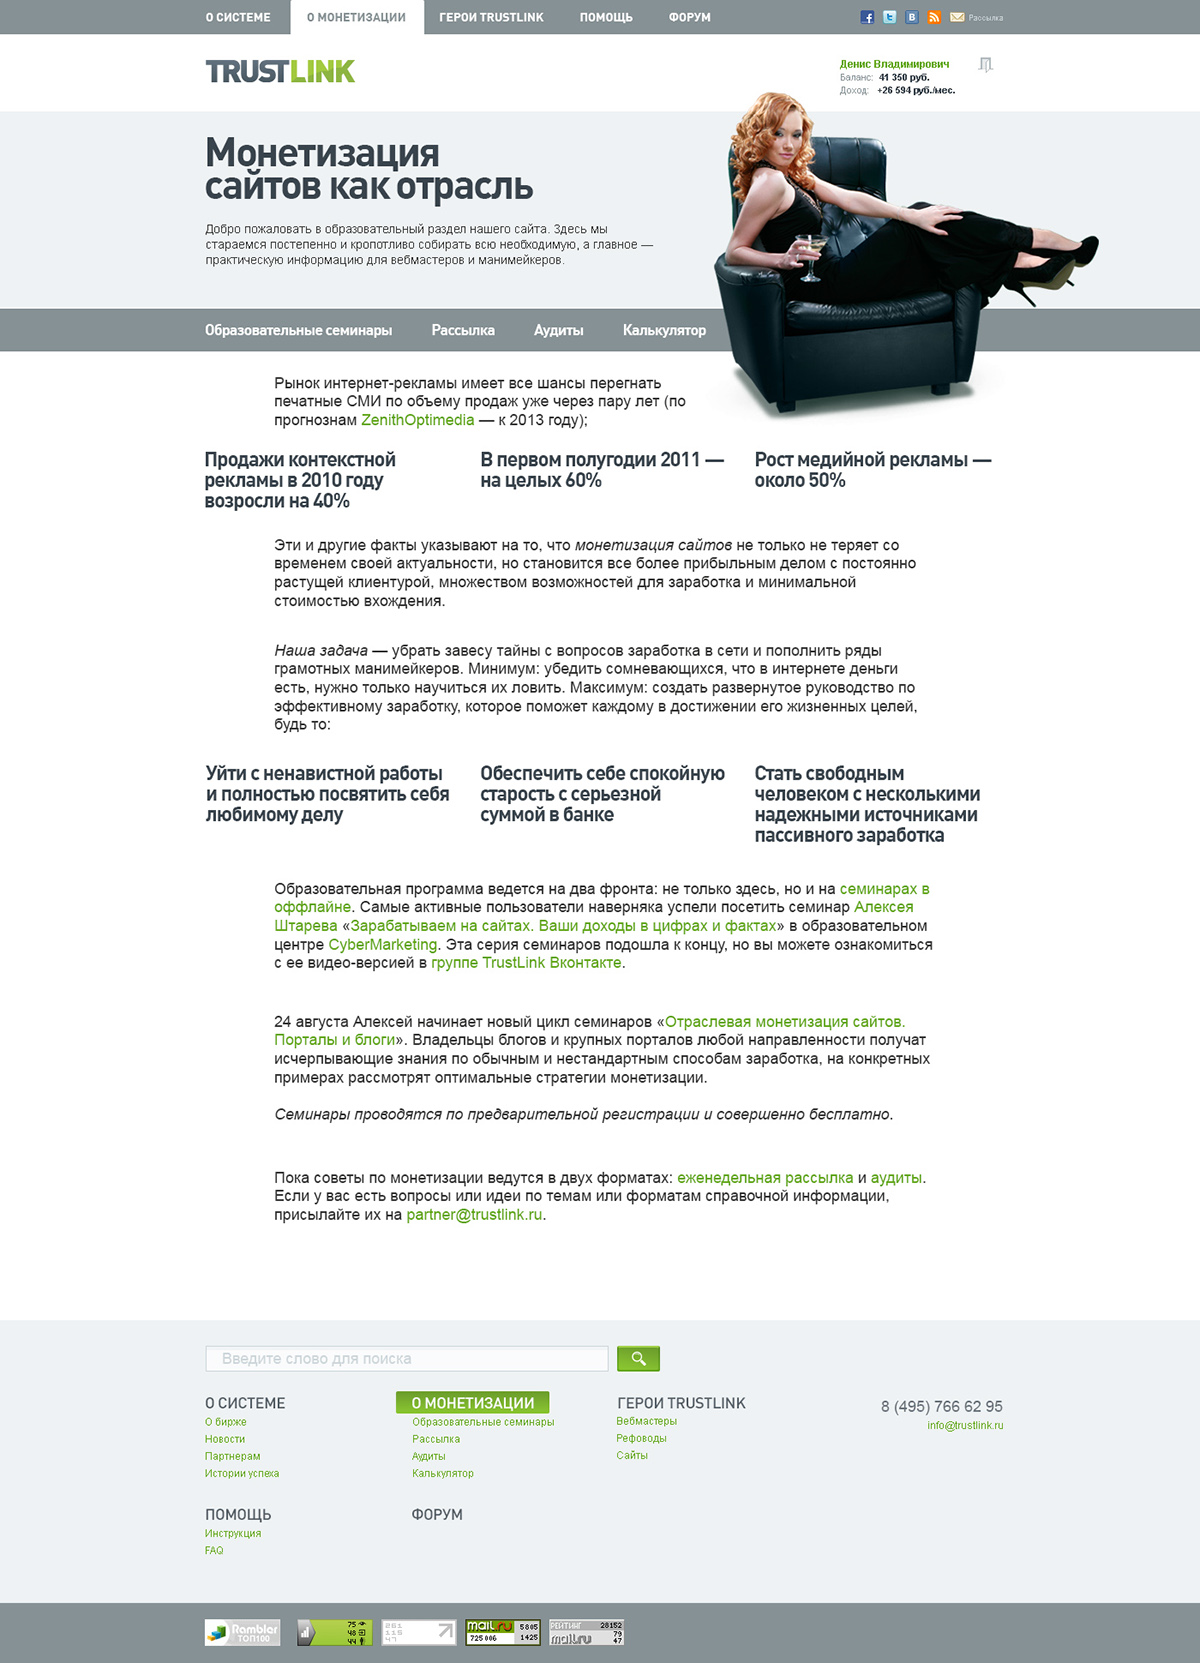 SEO Links market Promotion green  trustlink trust russian